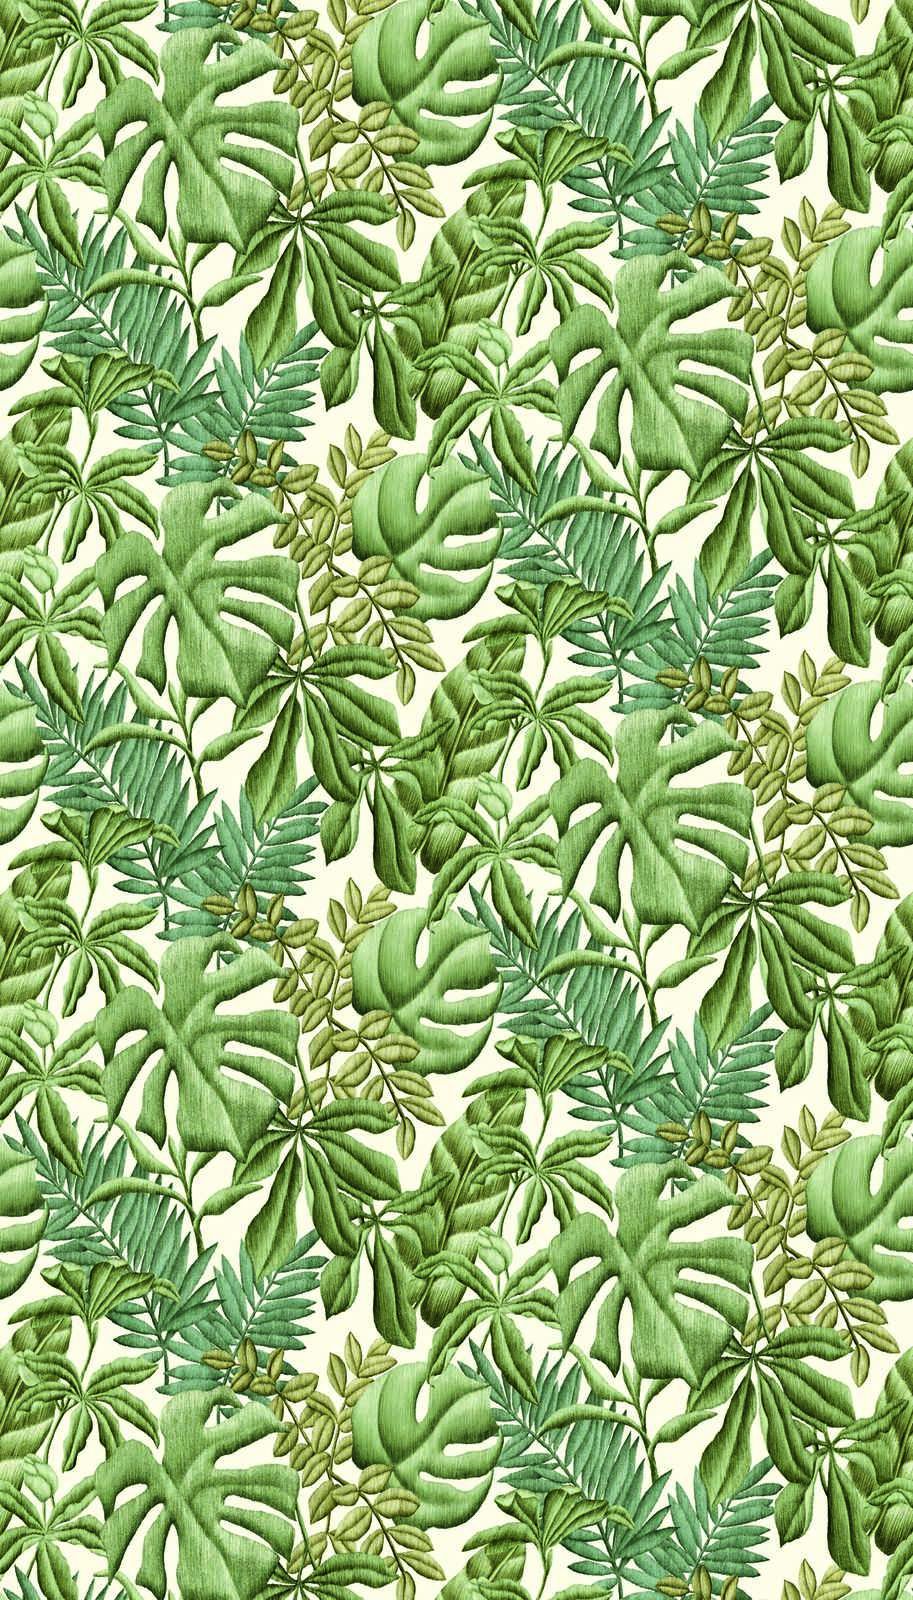             Vliestapete mit verschiedenen Blättern – Grün, Creme
        